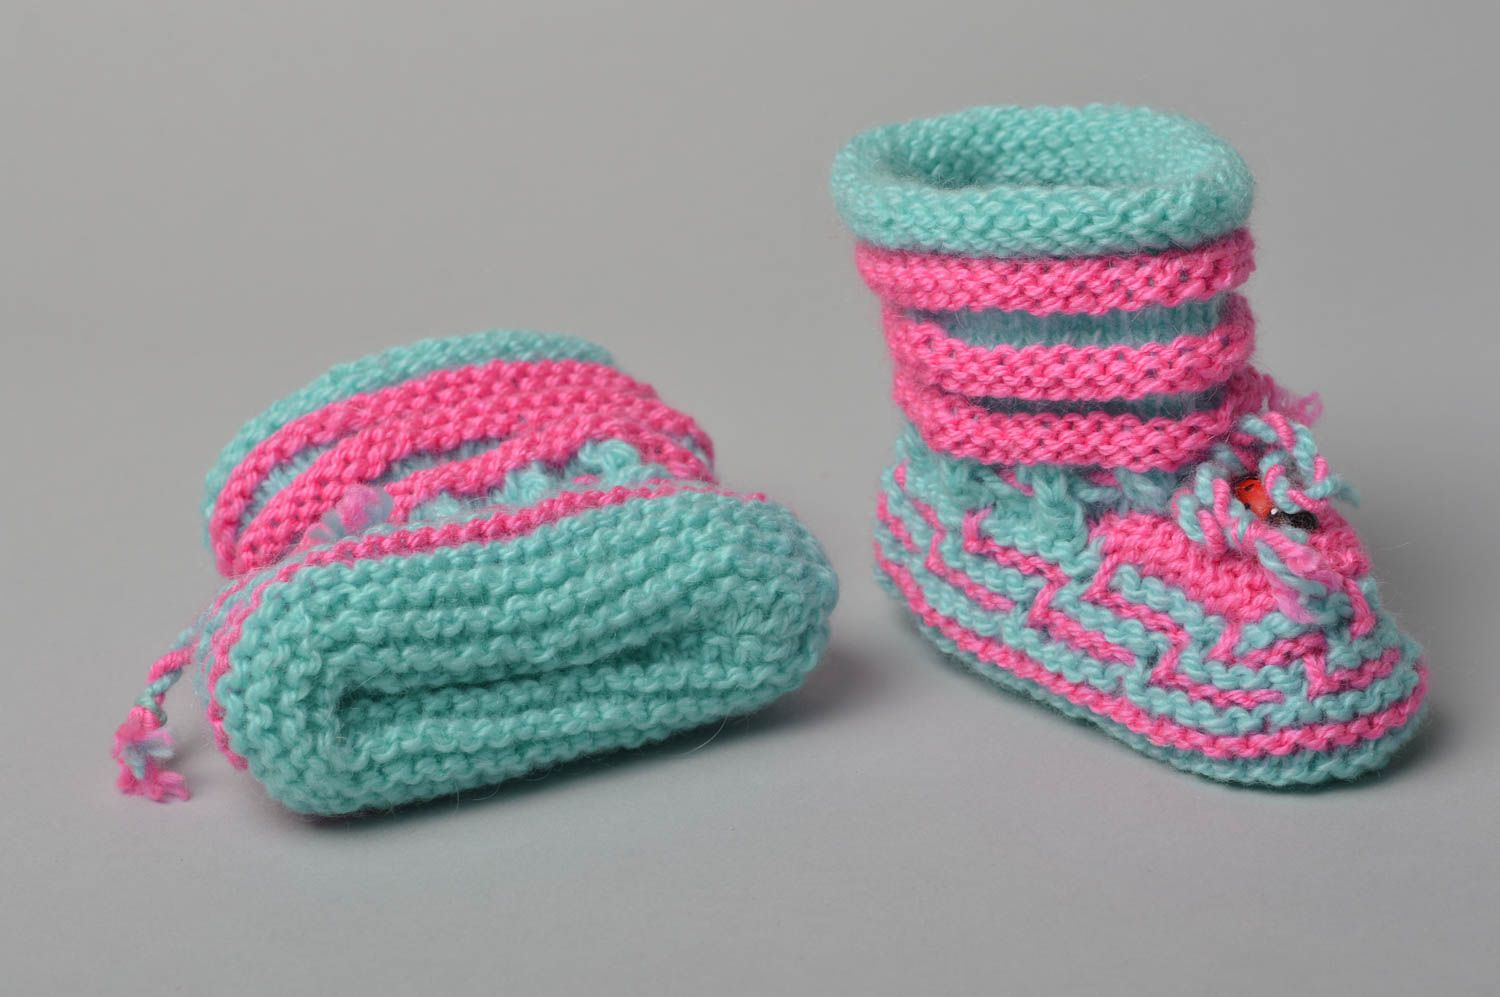 Пинетки вязаные крючком хенд мейд пинетки для малыша обувь для новорожденного фото 5